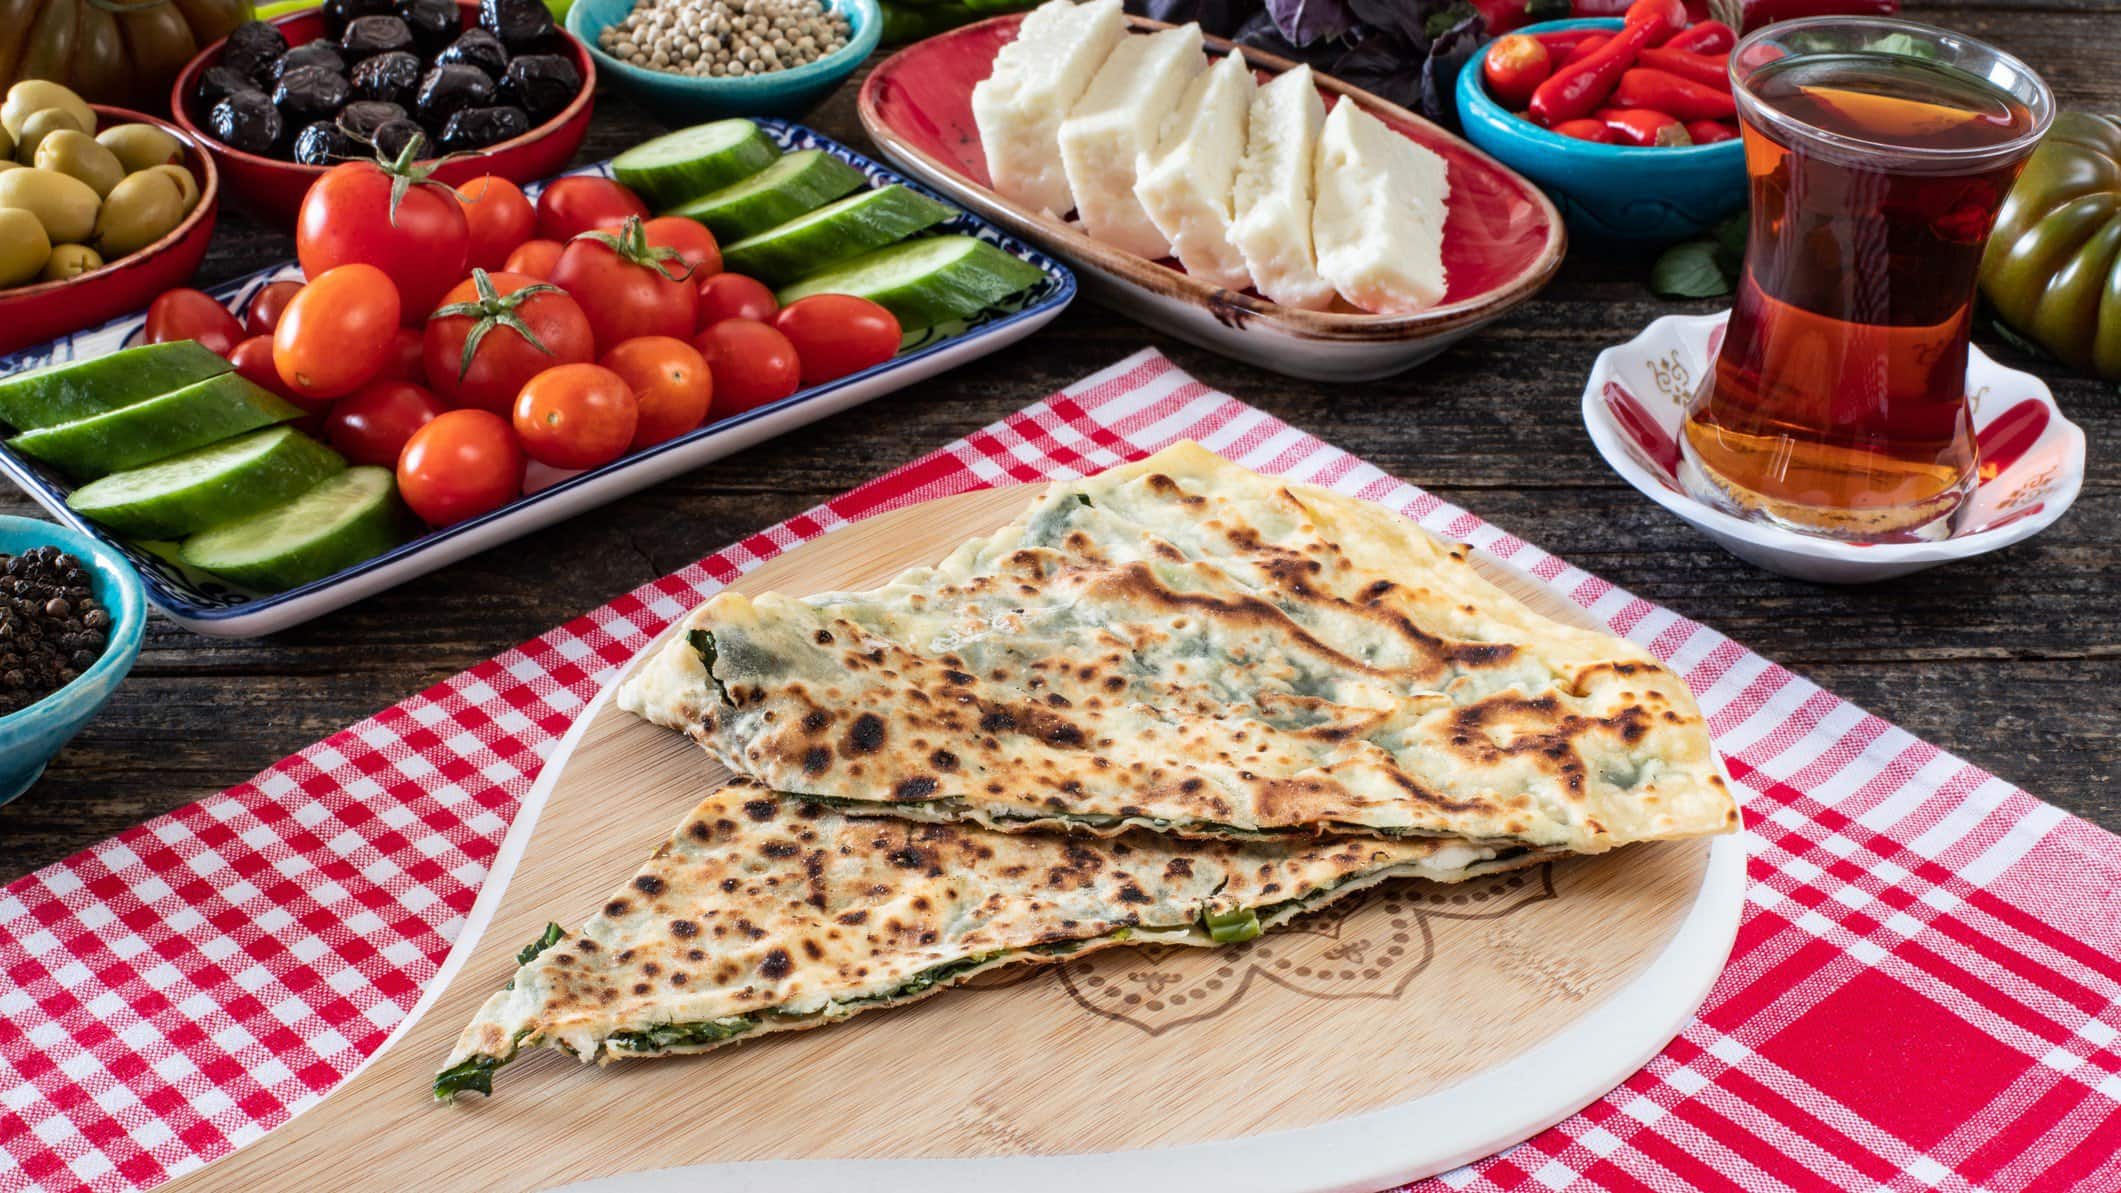 Gözleme auf Holzbrett auf rotem Tuch auf mit türkischen Speisen gedecktem Tisch. Daneben Tee. Draufsicht.